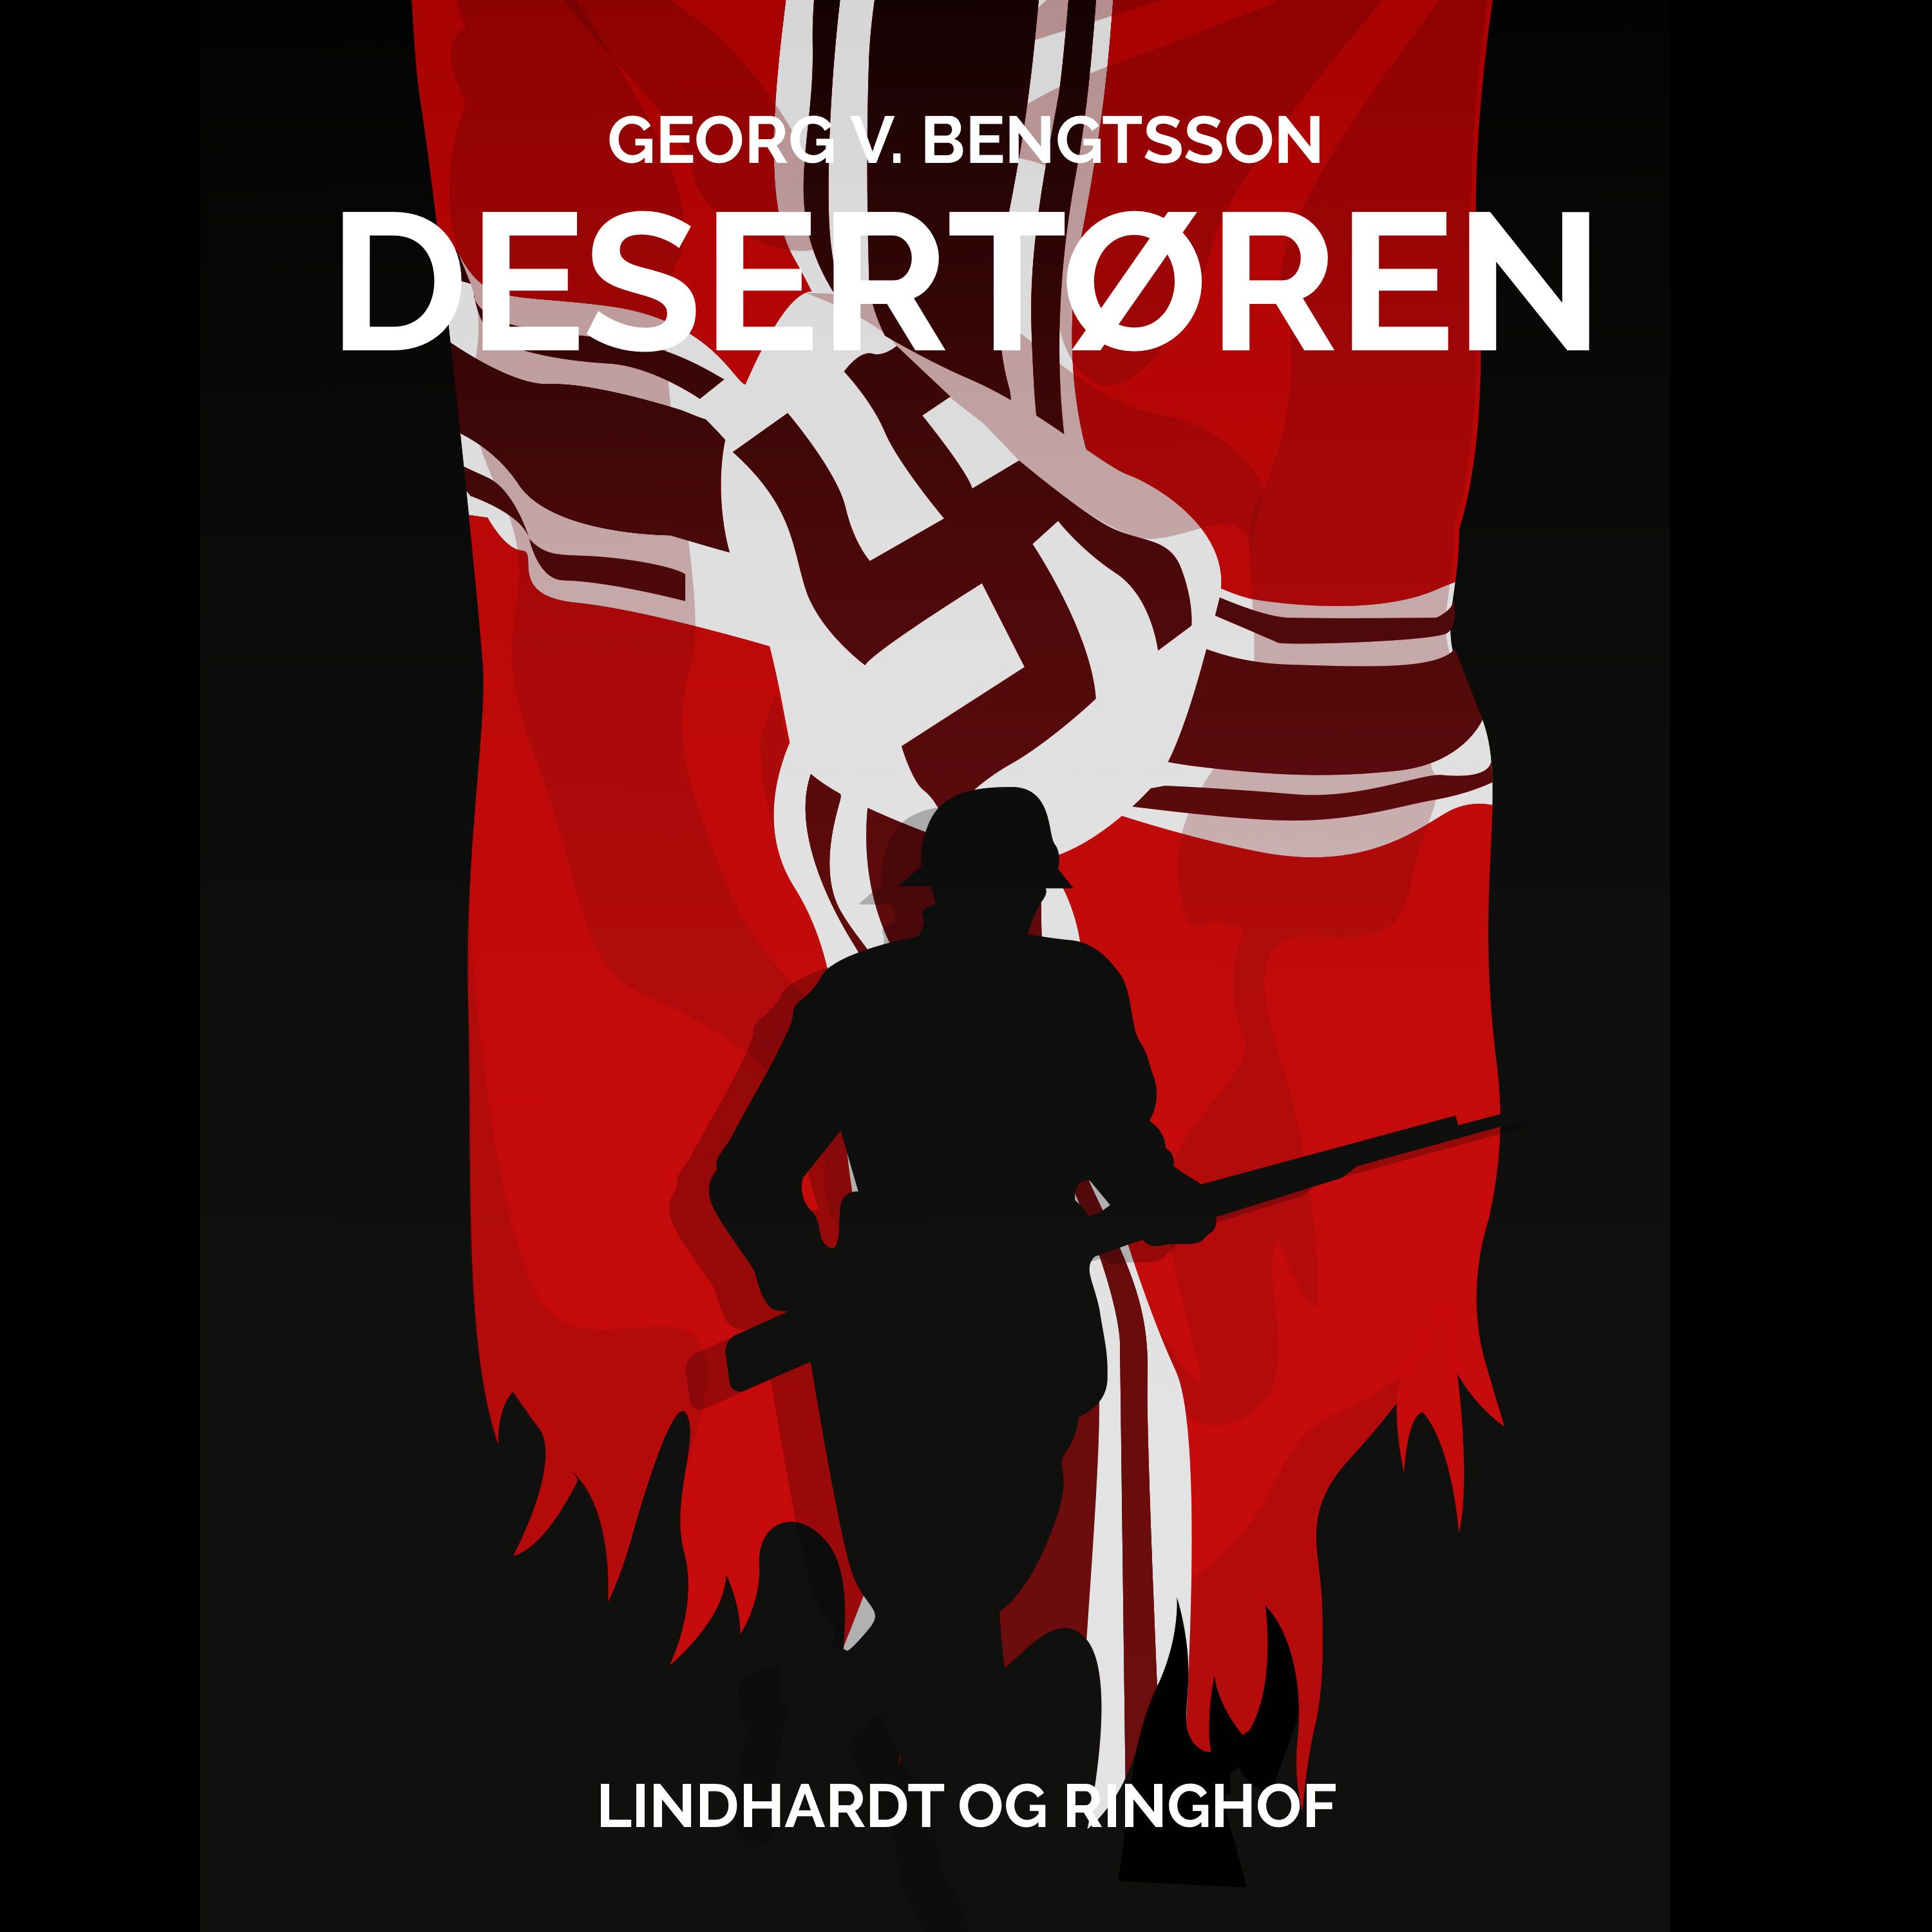 Desertøren, ljudbok av Georg V. Bengtsson